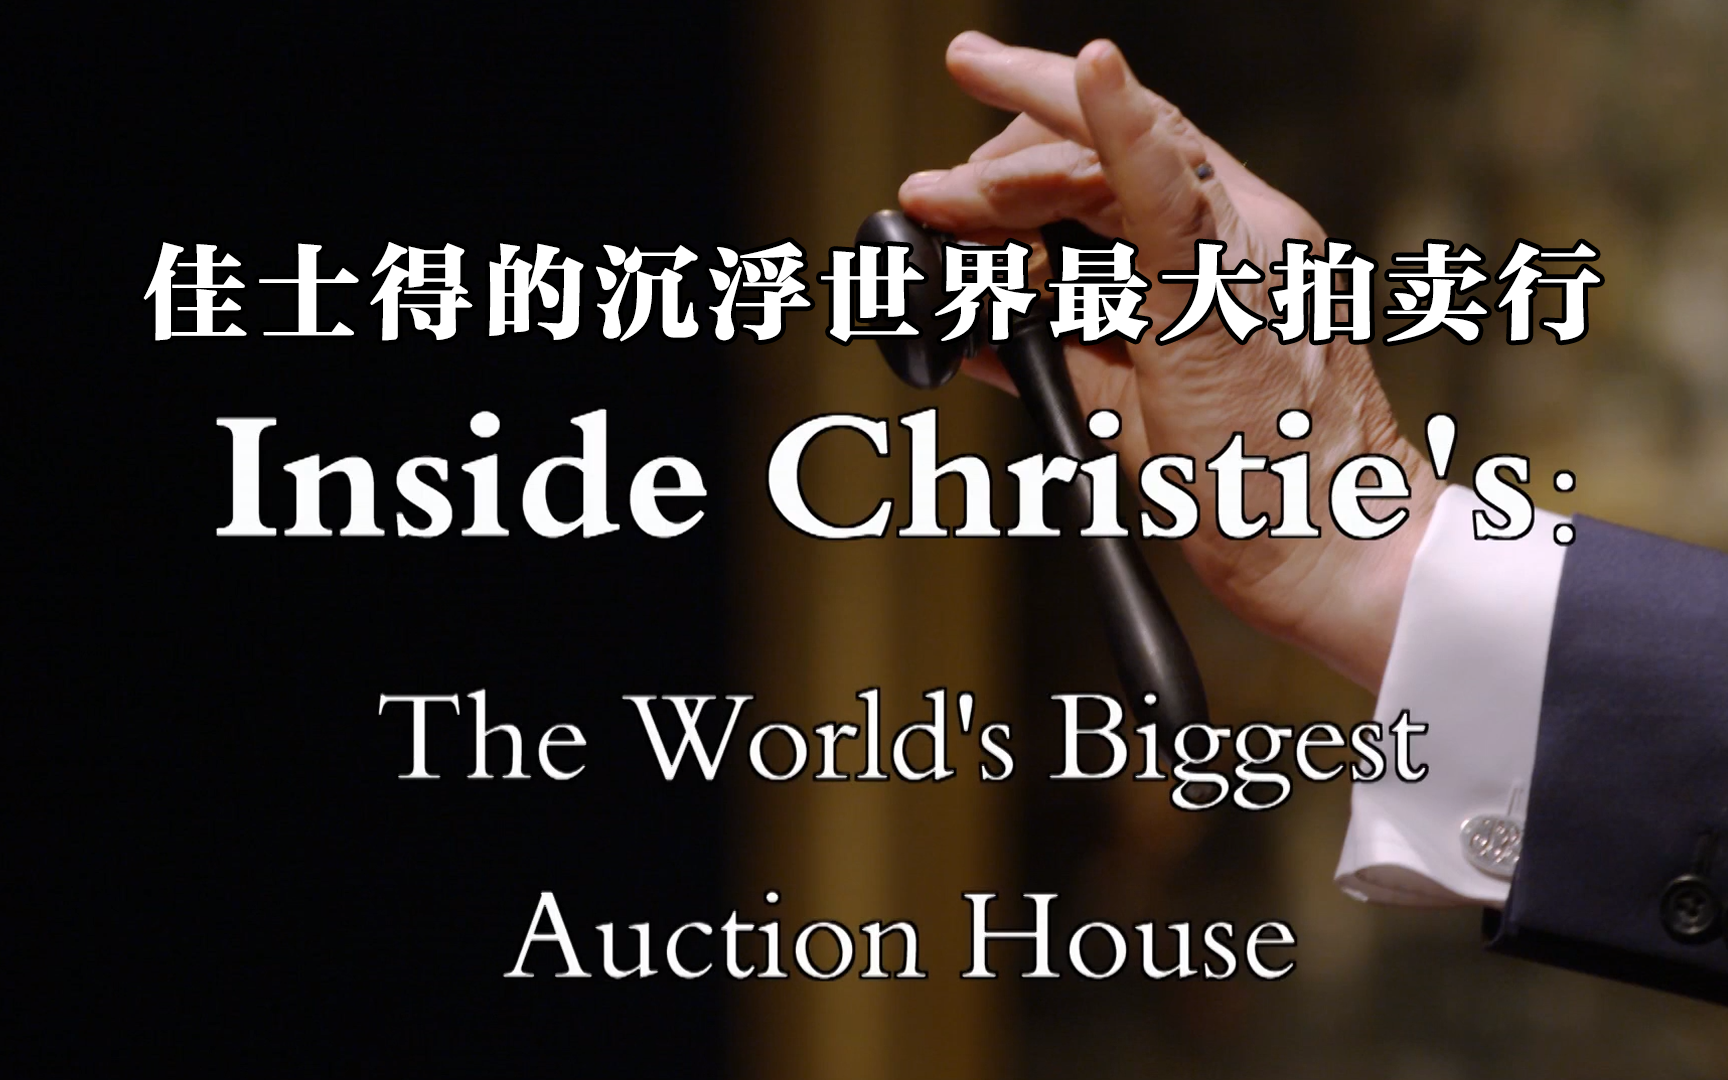 【纪录片】佳士得的沉浮世界最大拍卖行 Inside Christie's: The World's Biggest Auction House 2